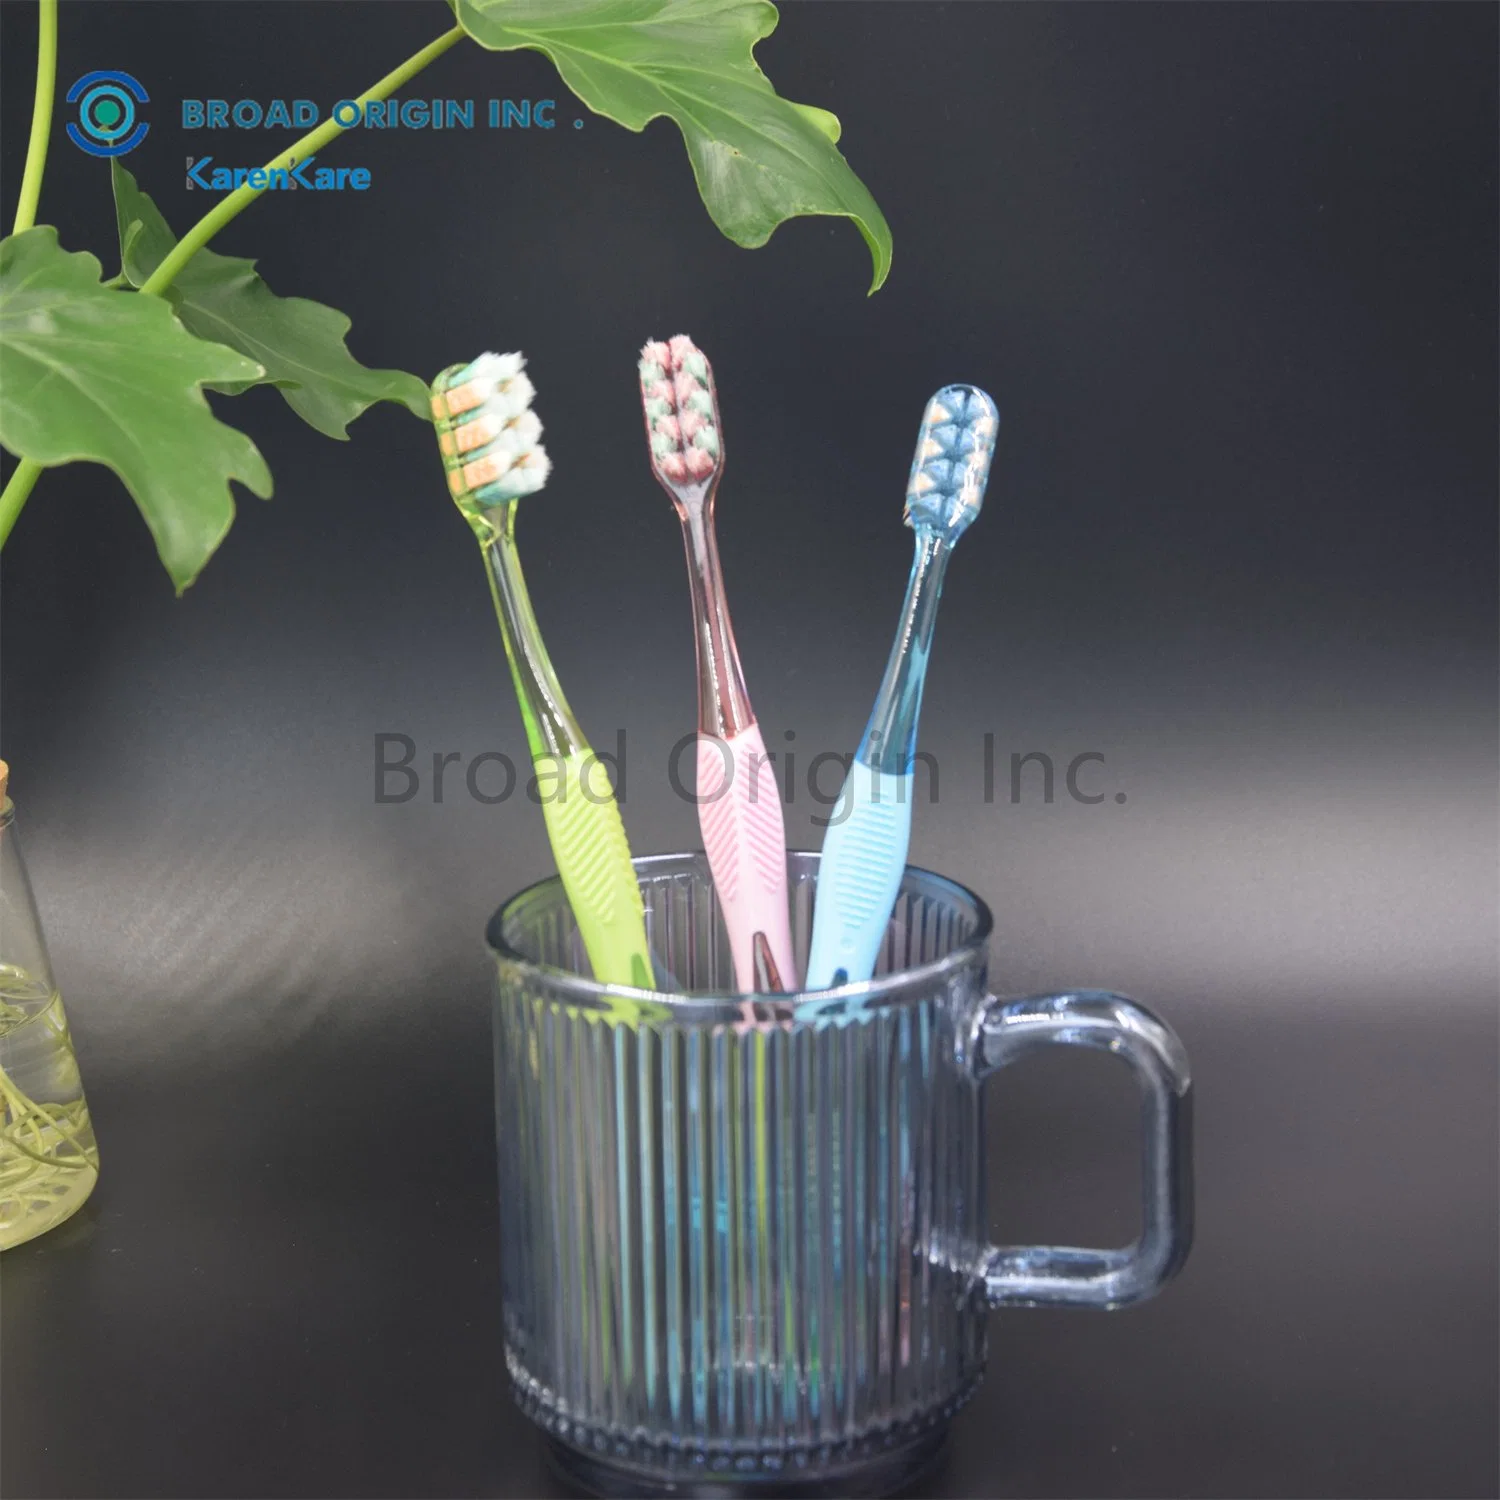 Novo design excelente qualidade escova de dentes Oral Care com o melhor preço Branqueamento logótipo personalizado amostras gratuitas escova de dentes para adultos